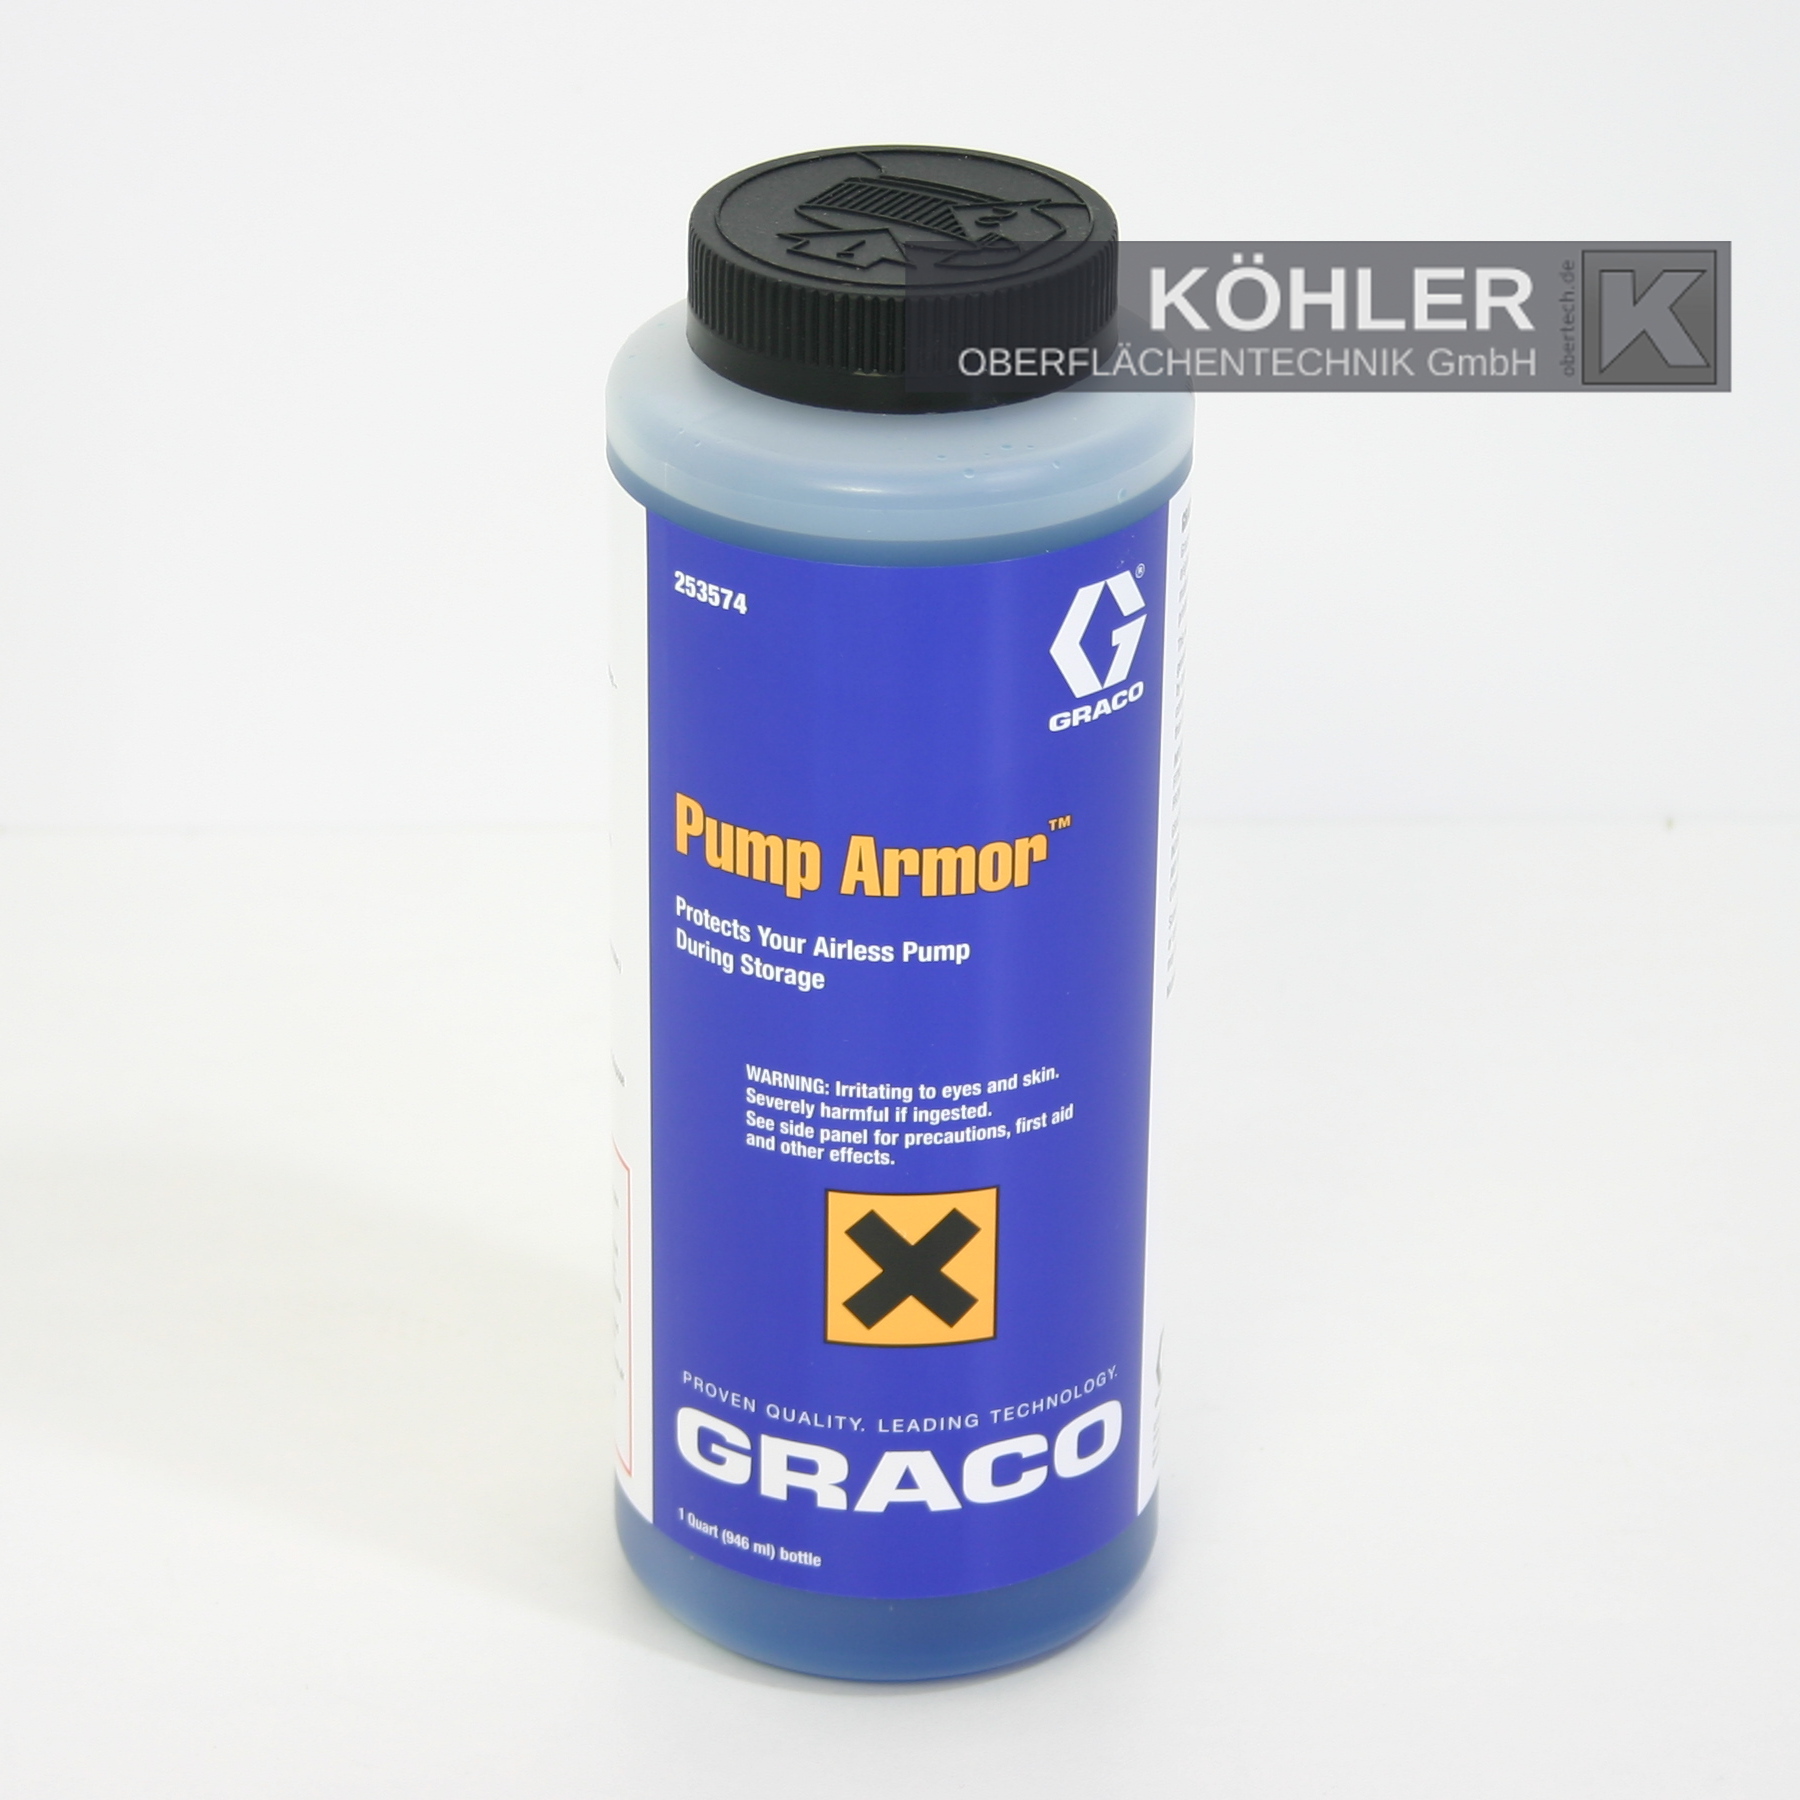 Graco Original Pump Armor Pflegeflüssigkeit für Airlessgeräte - 253574